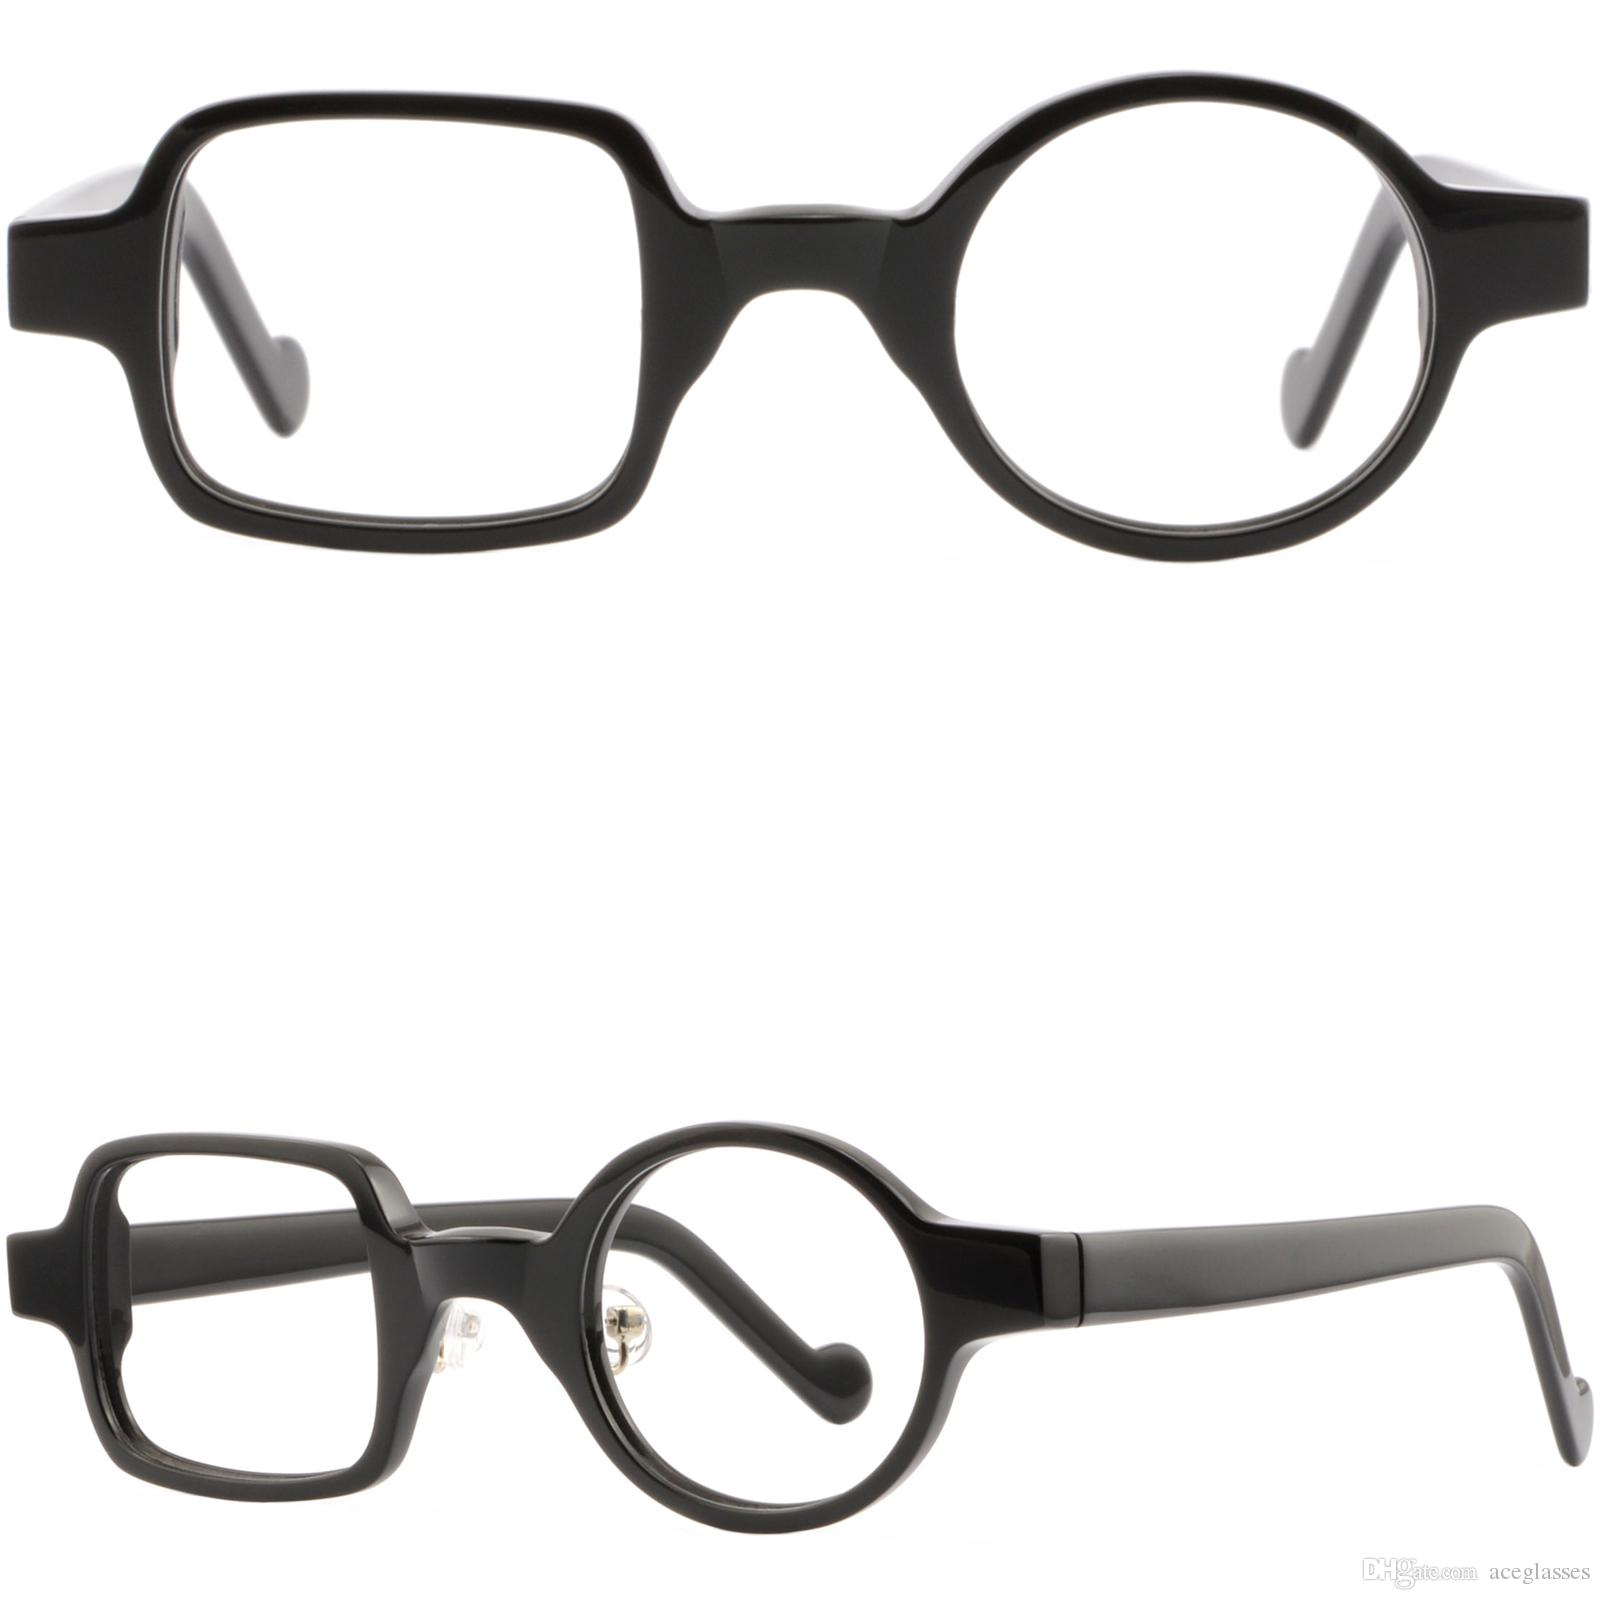 Detail Asymmetrische Brille Nomer 7